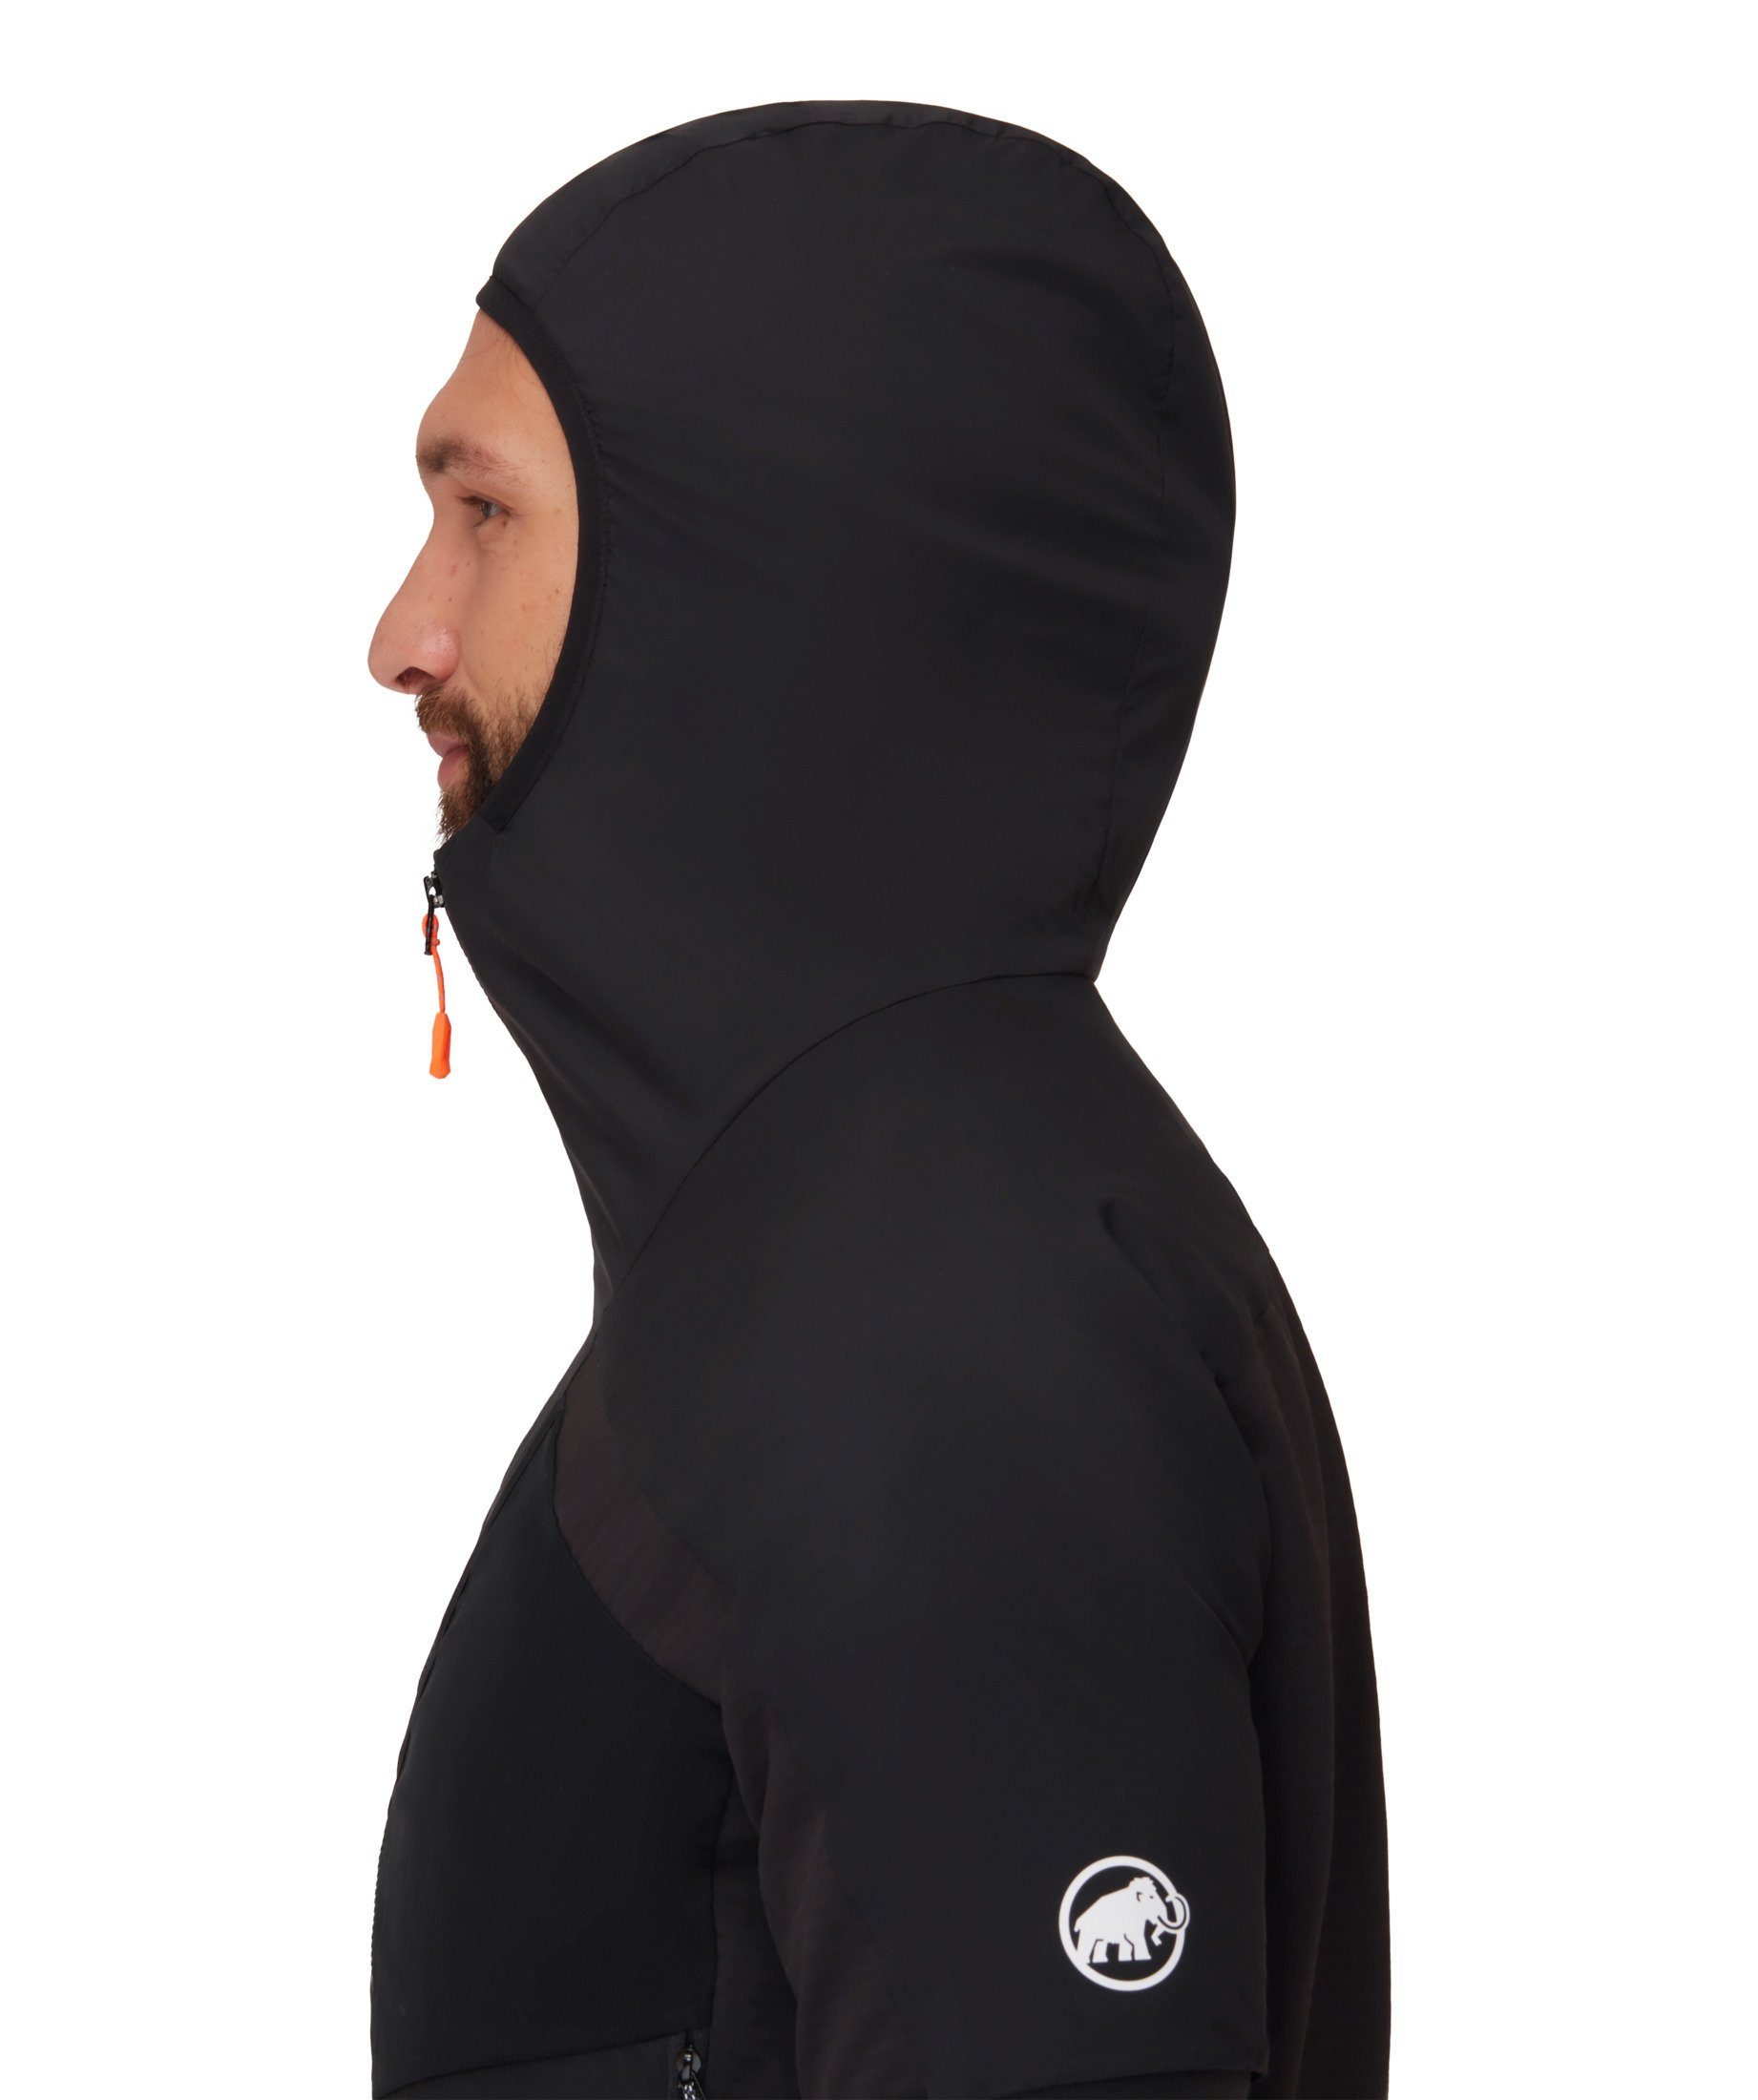 IN Vest black Mammut Aenergy Men Insulation Hybrid Hybridjacke Hooded